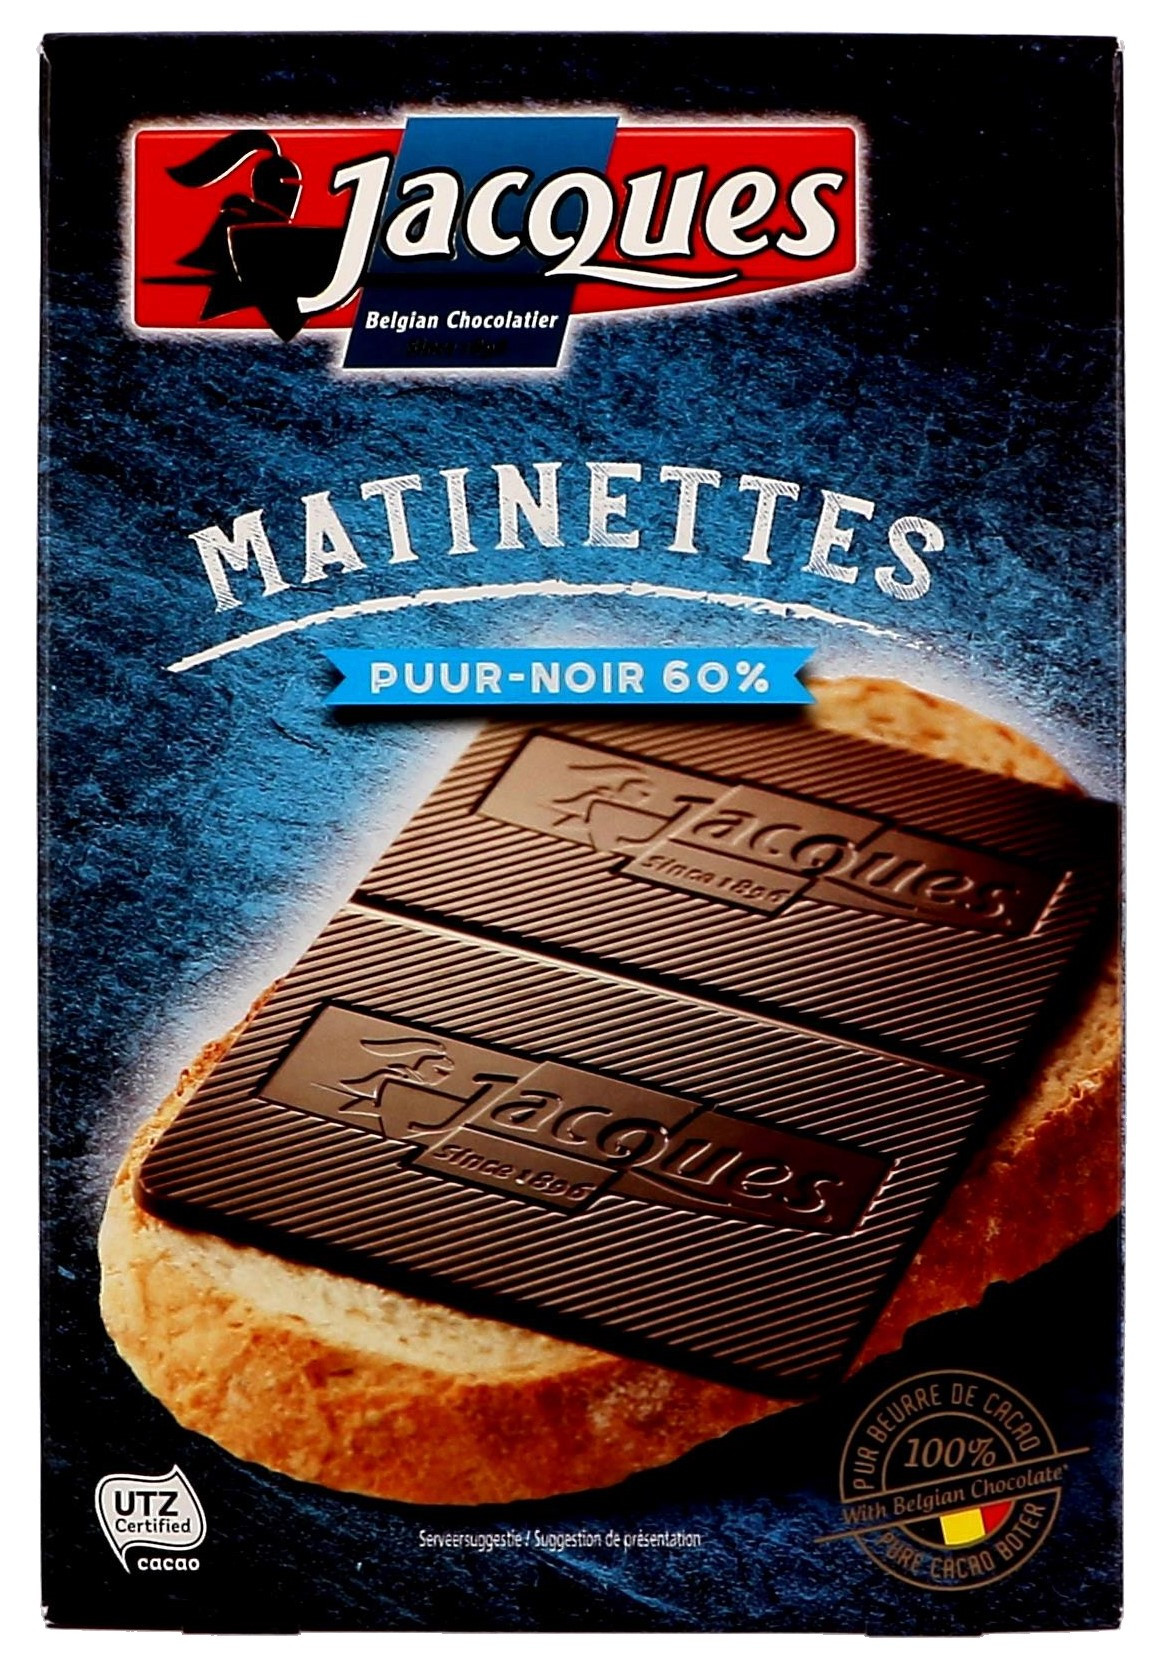 Jacques Matinettes Puur Fondant Chocolade 12x128gr Online - Nevejan